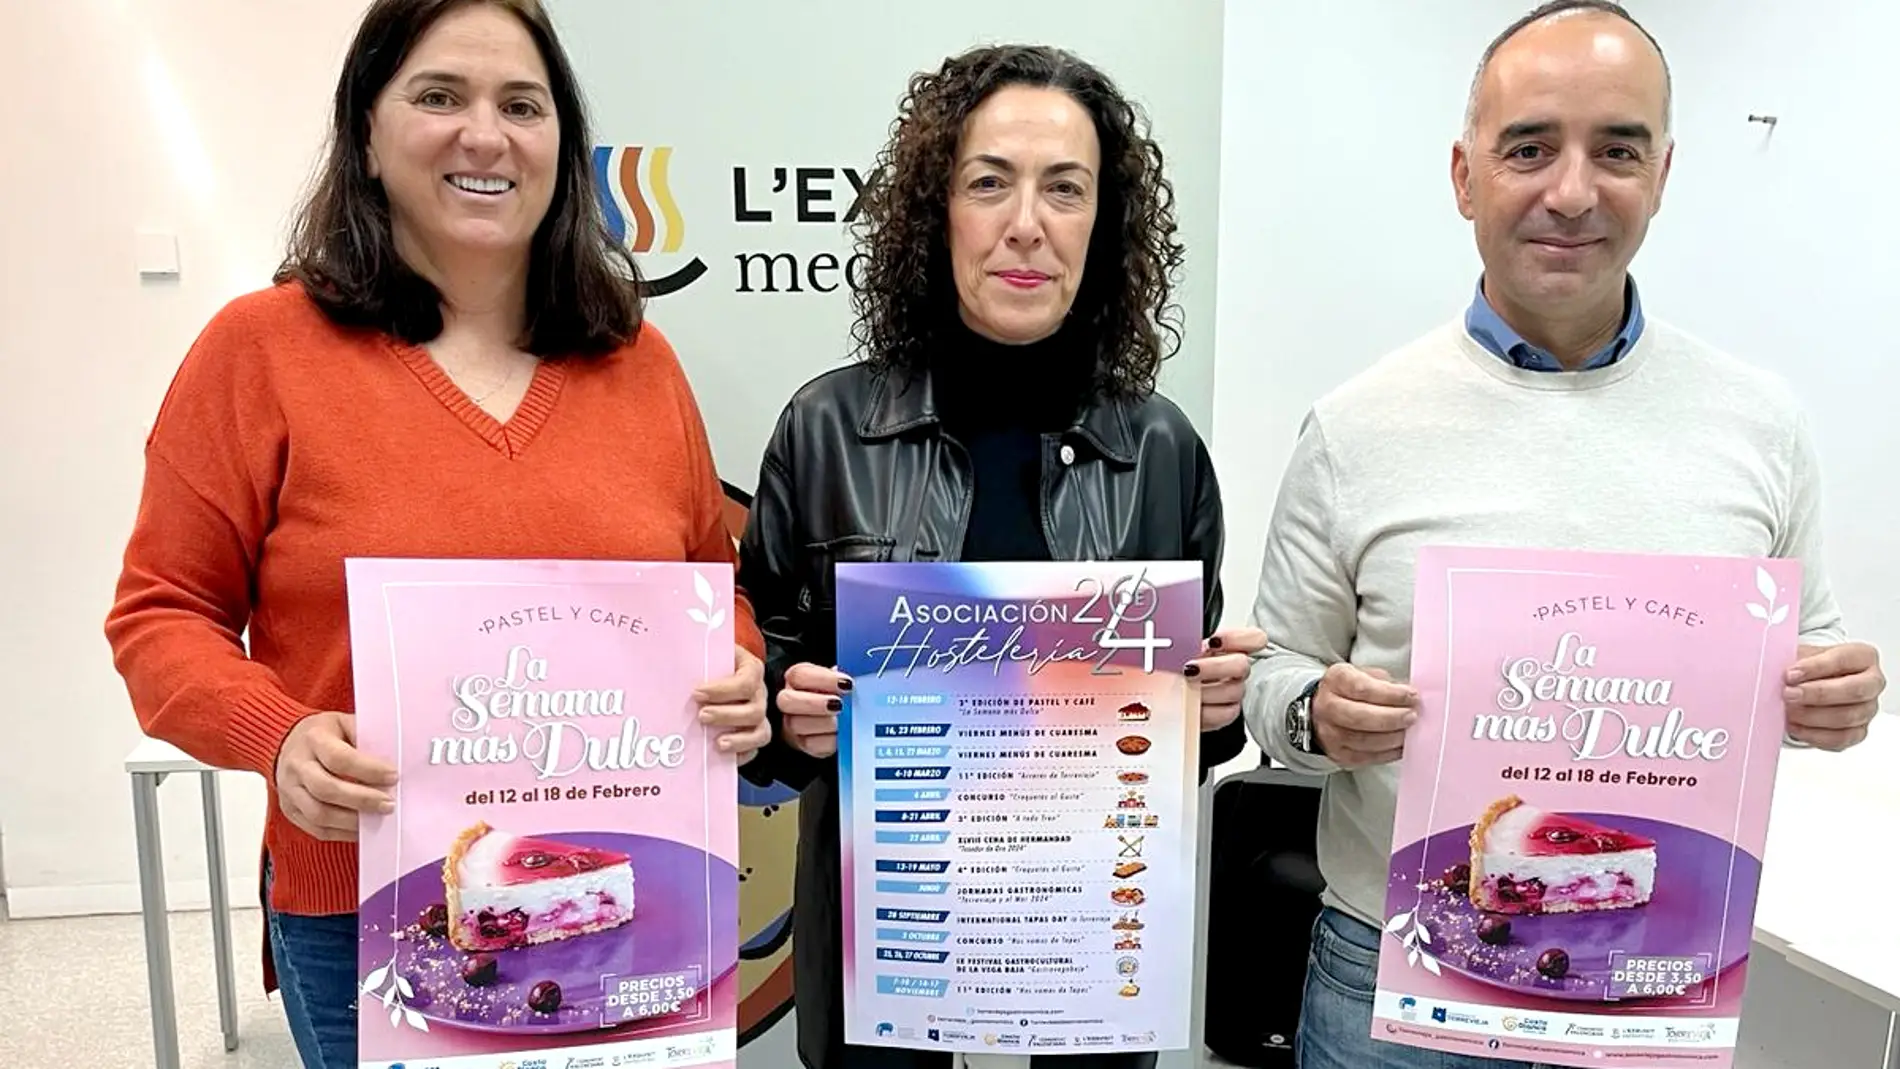 3ª Edición de pastel y café en Torrevieja "La semana más dulce" del 12 al 18 de febrero 